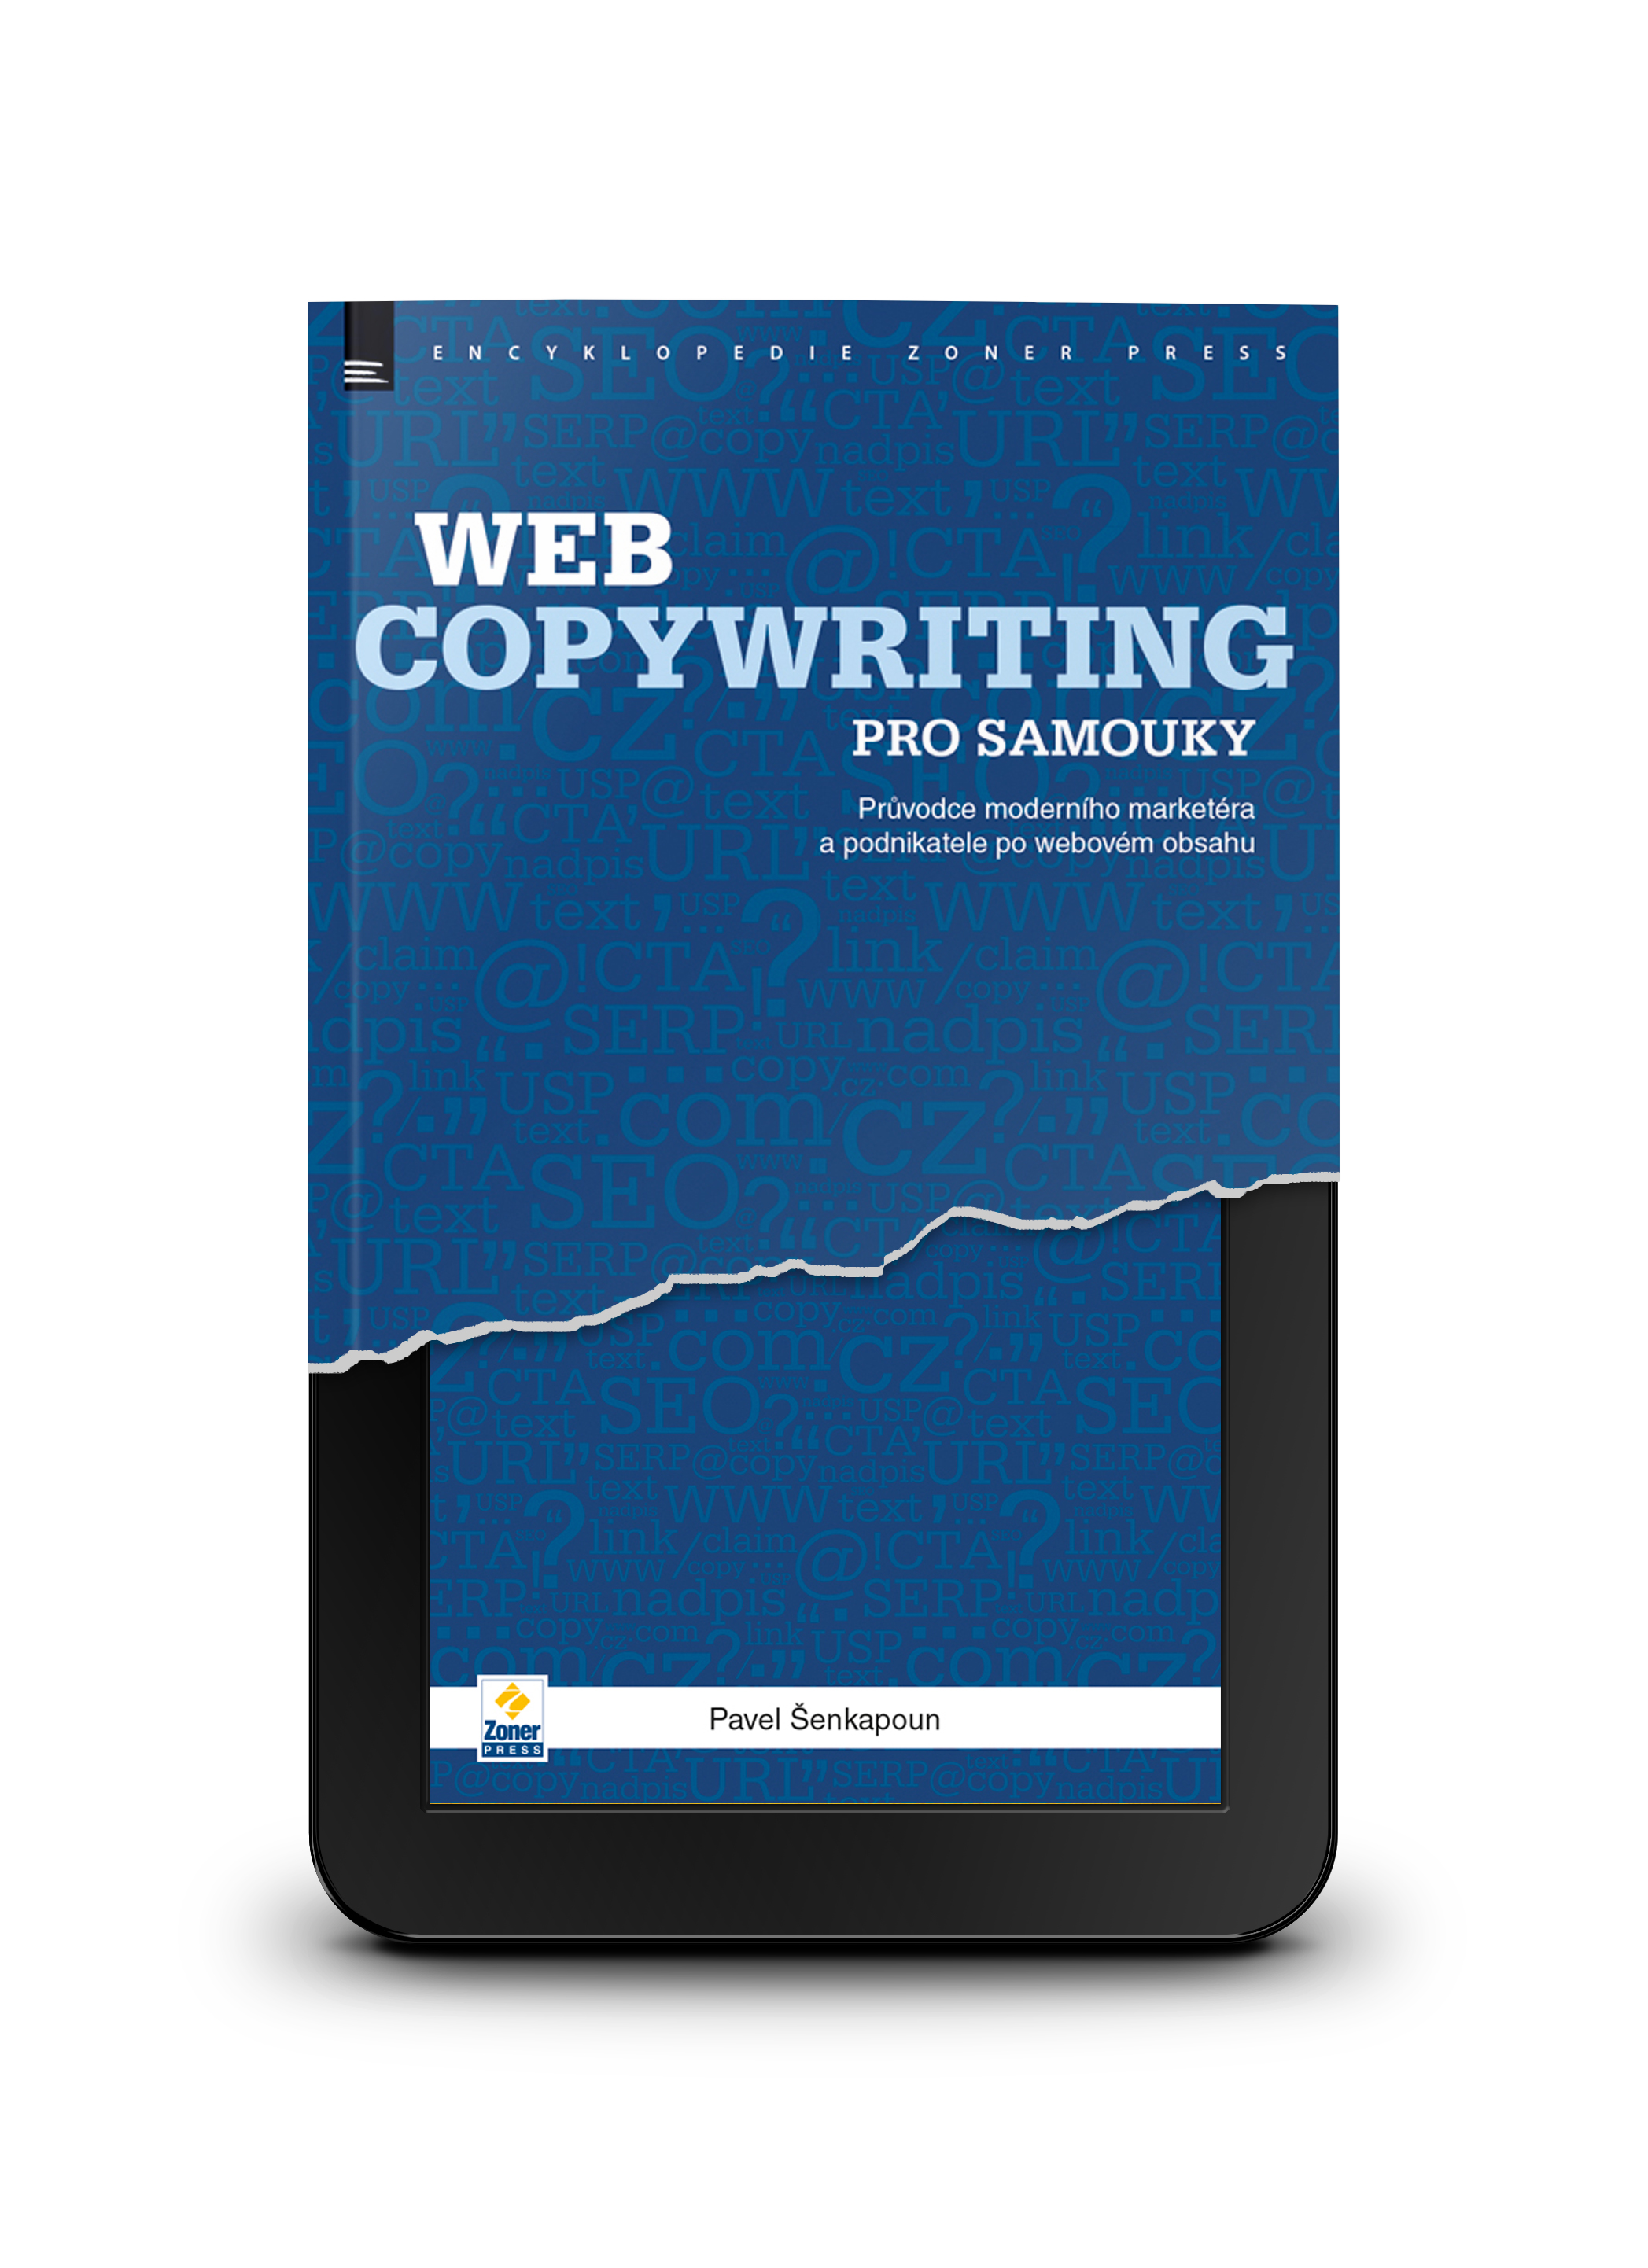 Webcopywriting pro samouky e-kniha - Průvodce moderního marketéra a podnikatele po webovém obsahu